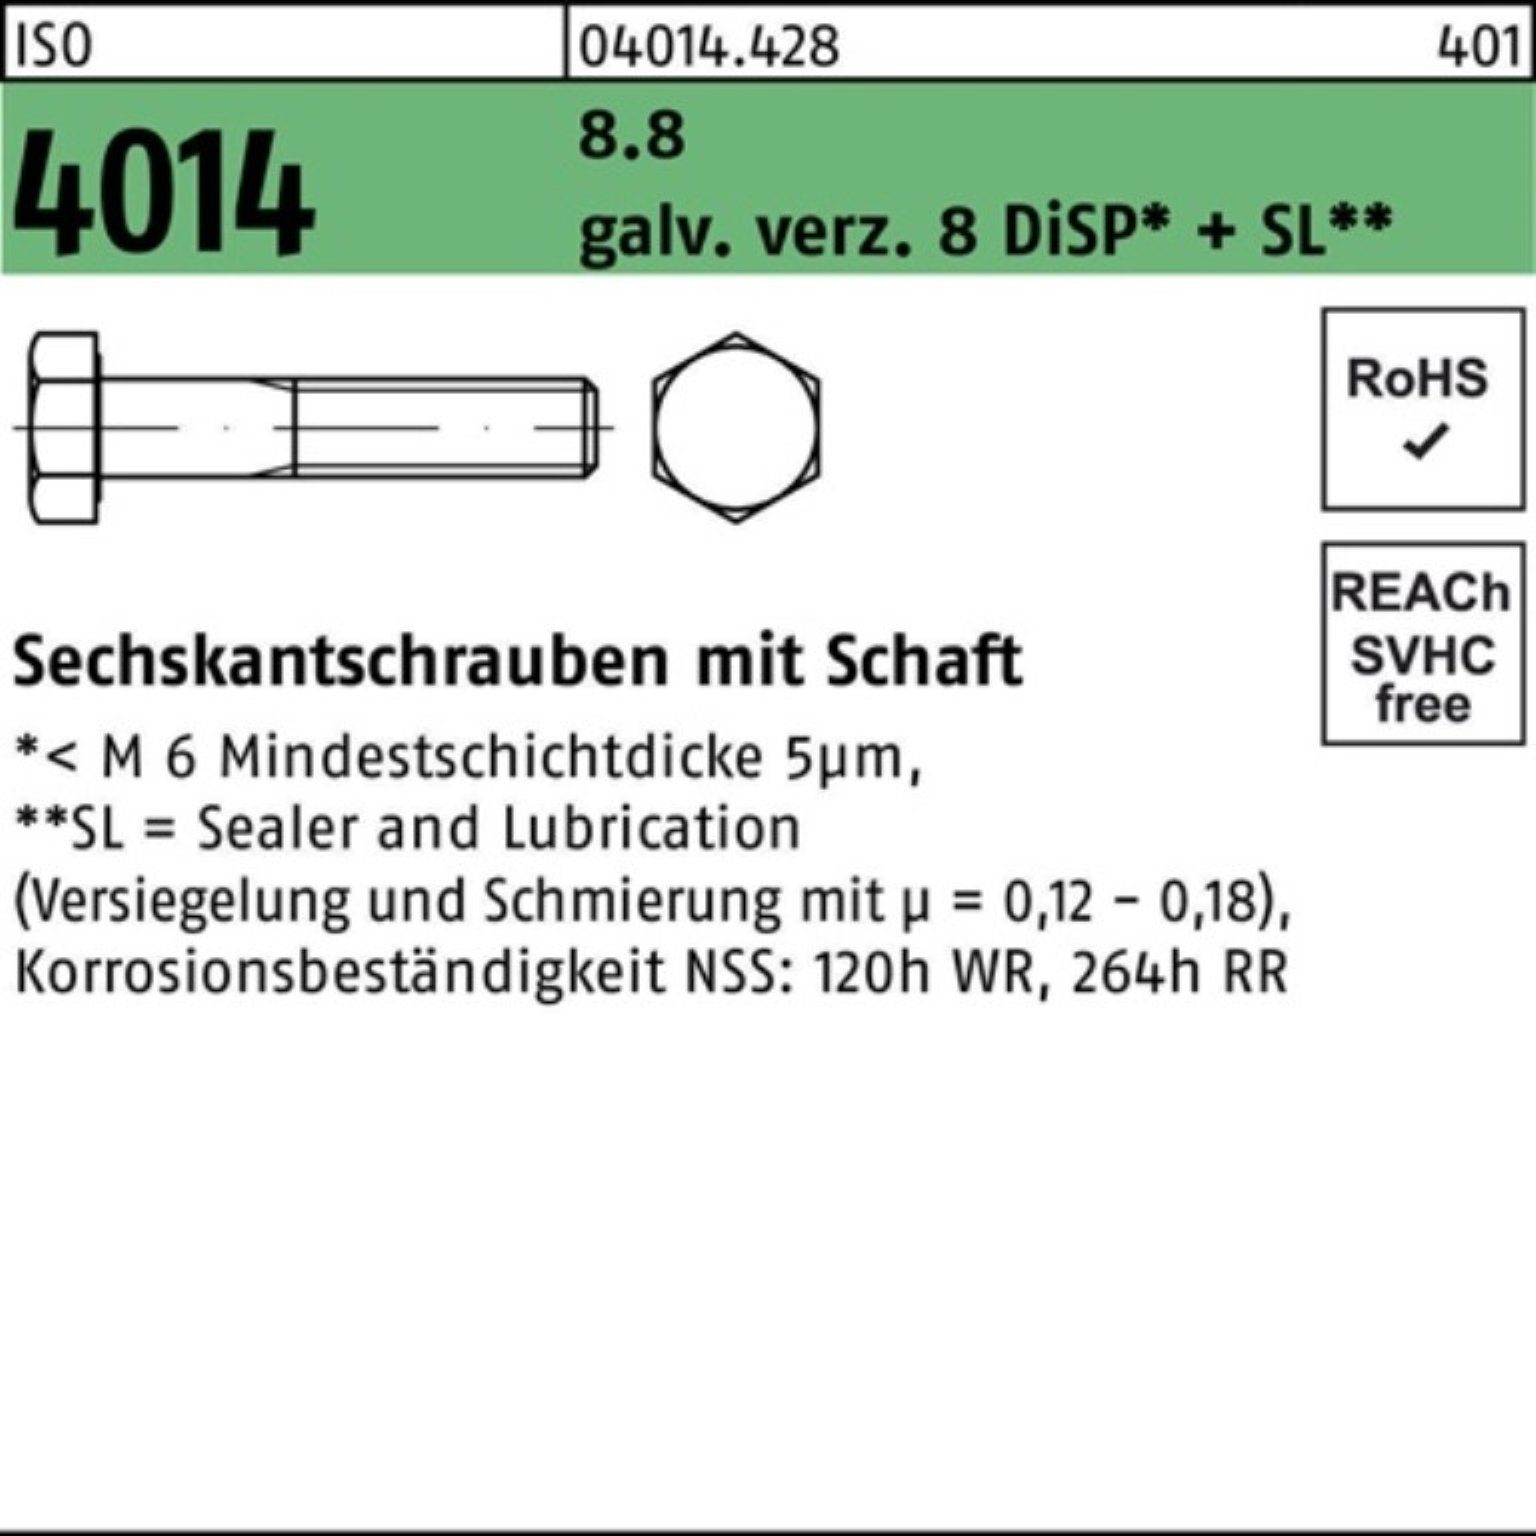 Bufab Sechskantschraube 100er Pack Sechskantschraube ISO 4014 Schaft M20x200 8.8 galv.verz. 8